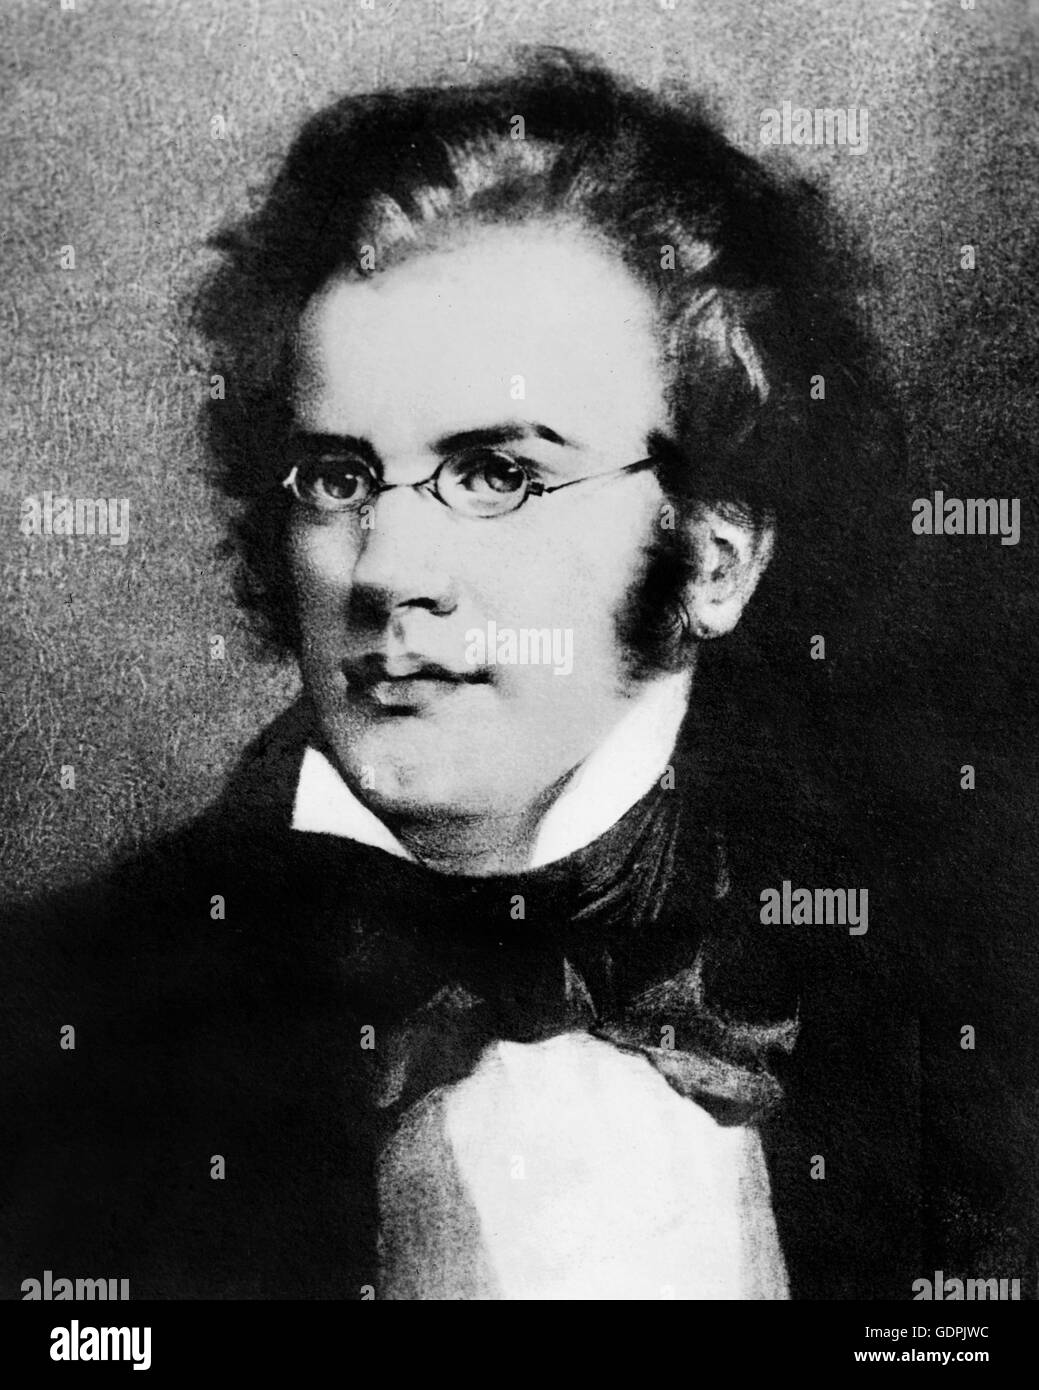 Franz Schubert. Portrait of the Austrian composer, Franz Peter Schubert (1797-1828). Stock Photo